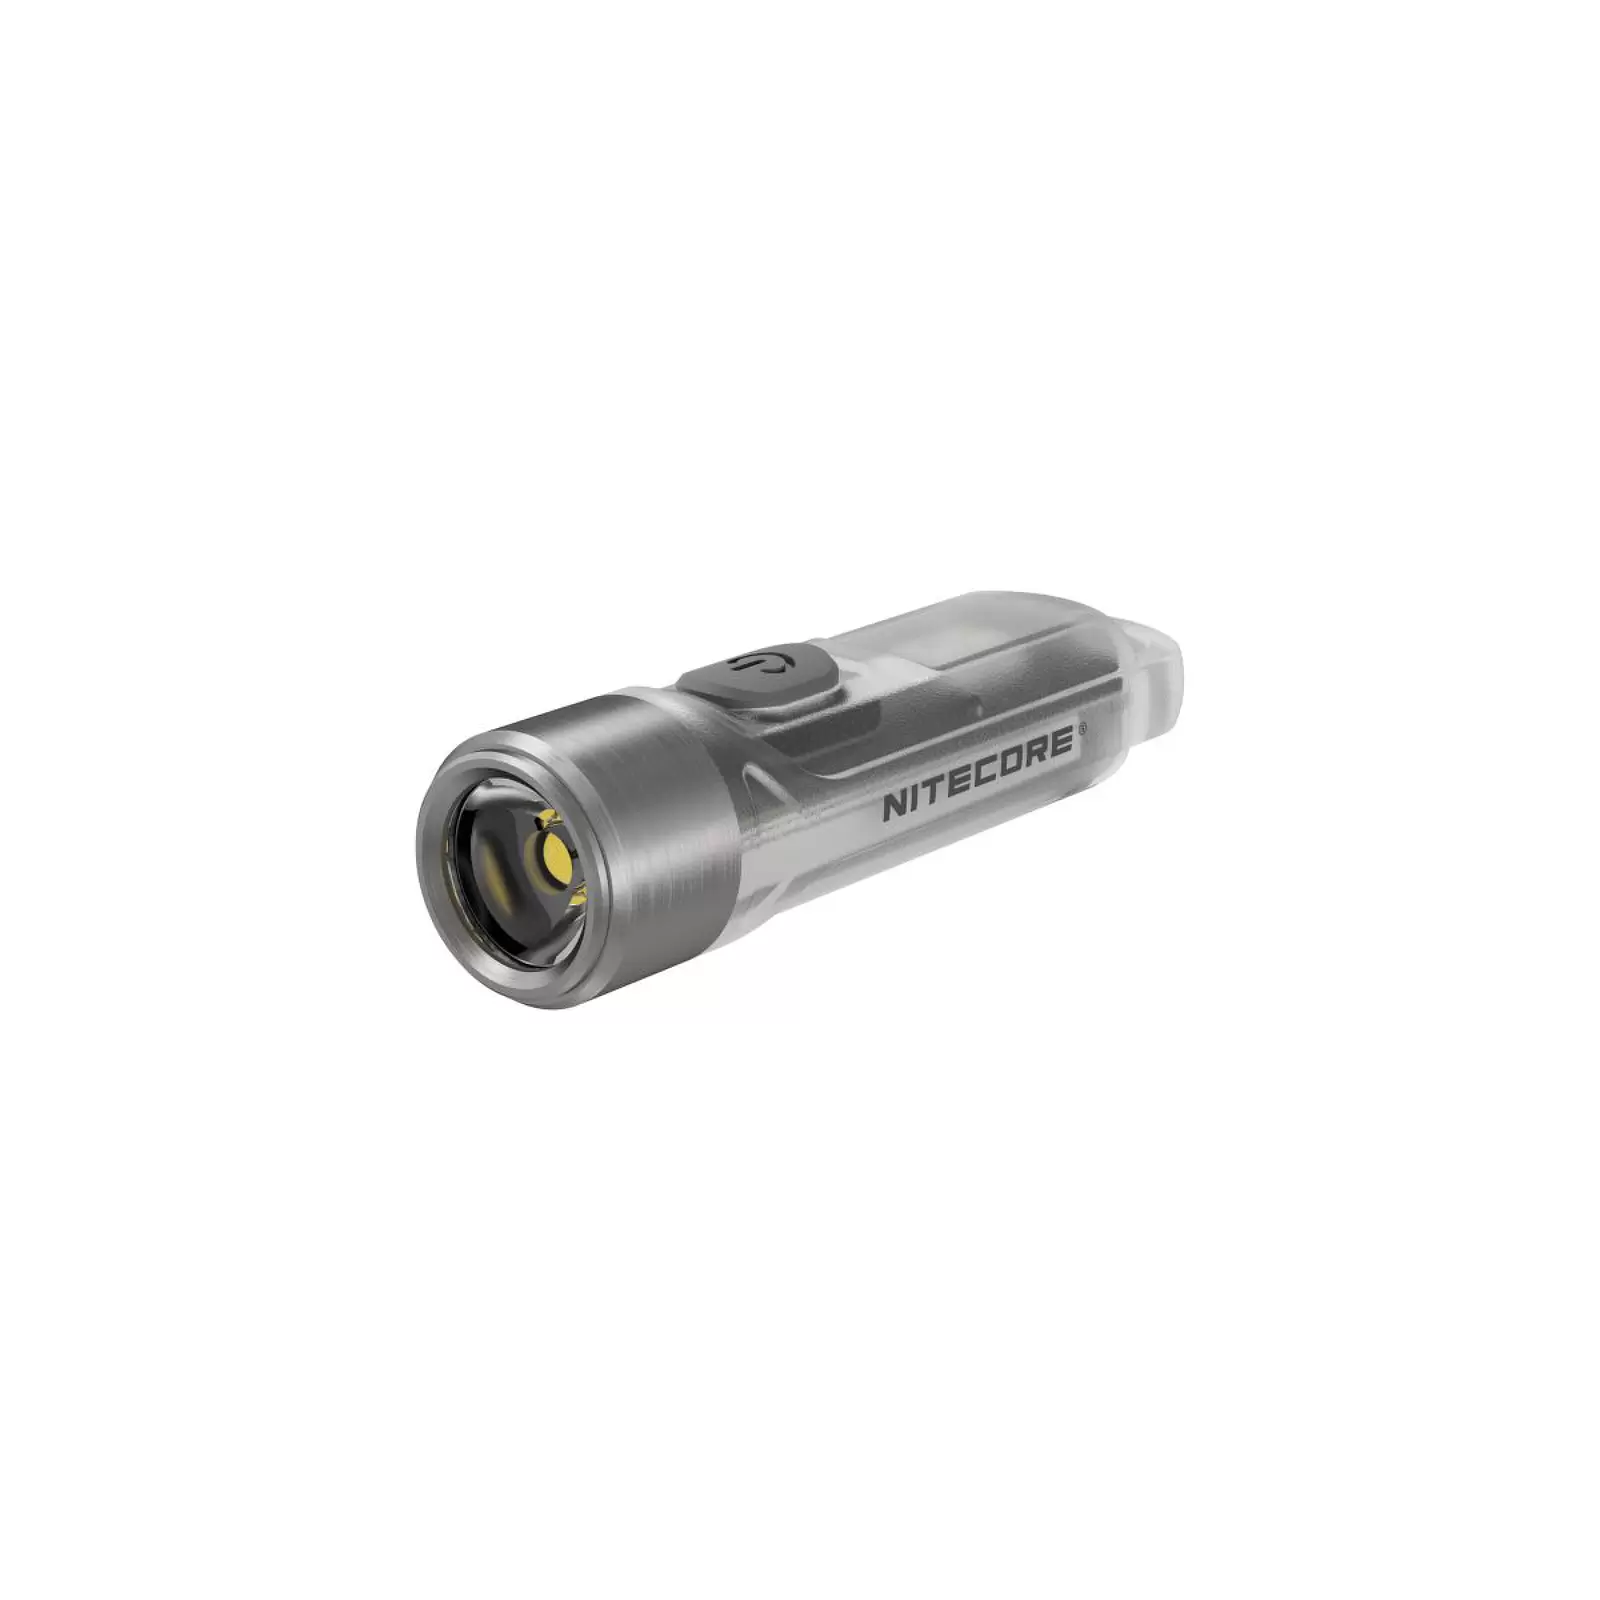 Schlüsselanhänger-Taschenlampe Nitecore TIKI - 300 Lumen, mit Micro-USB Port